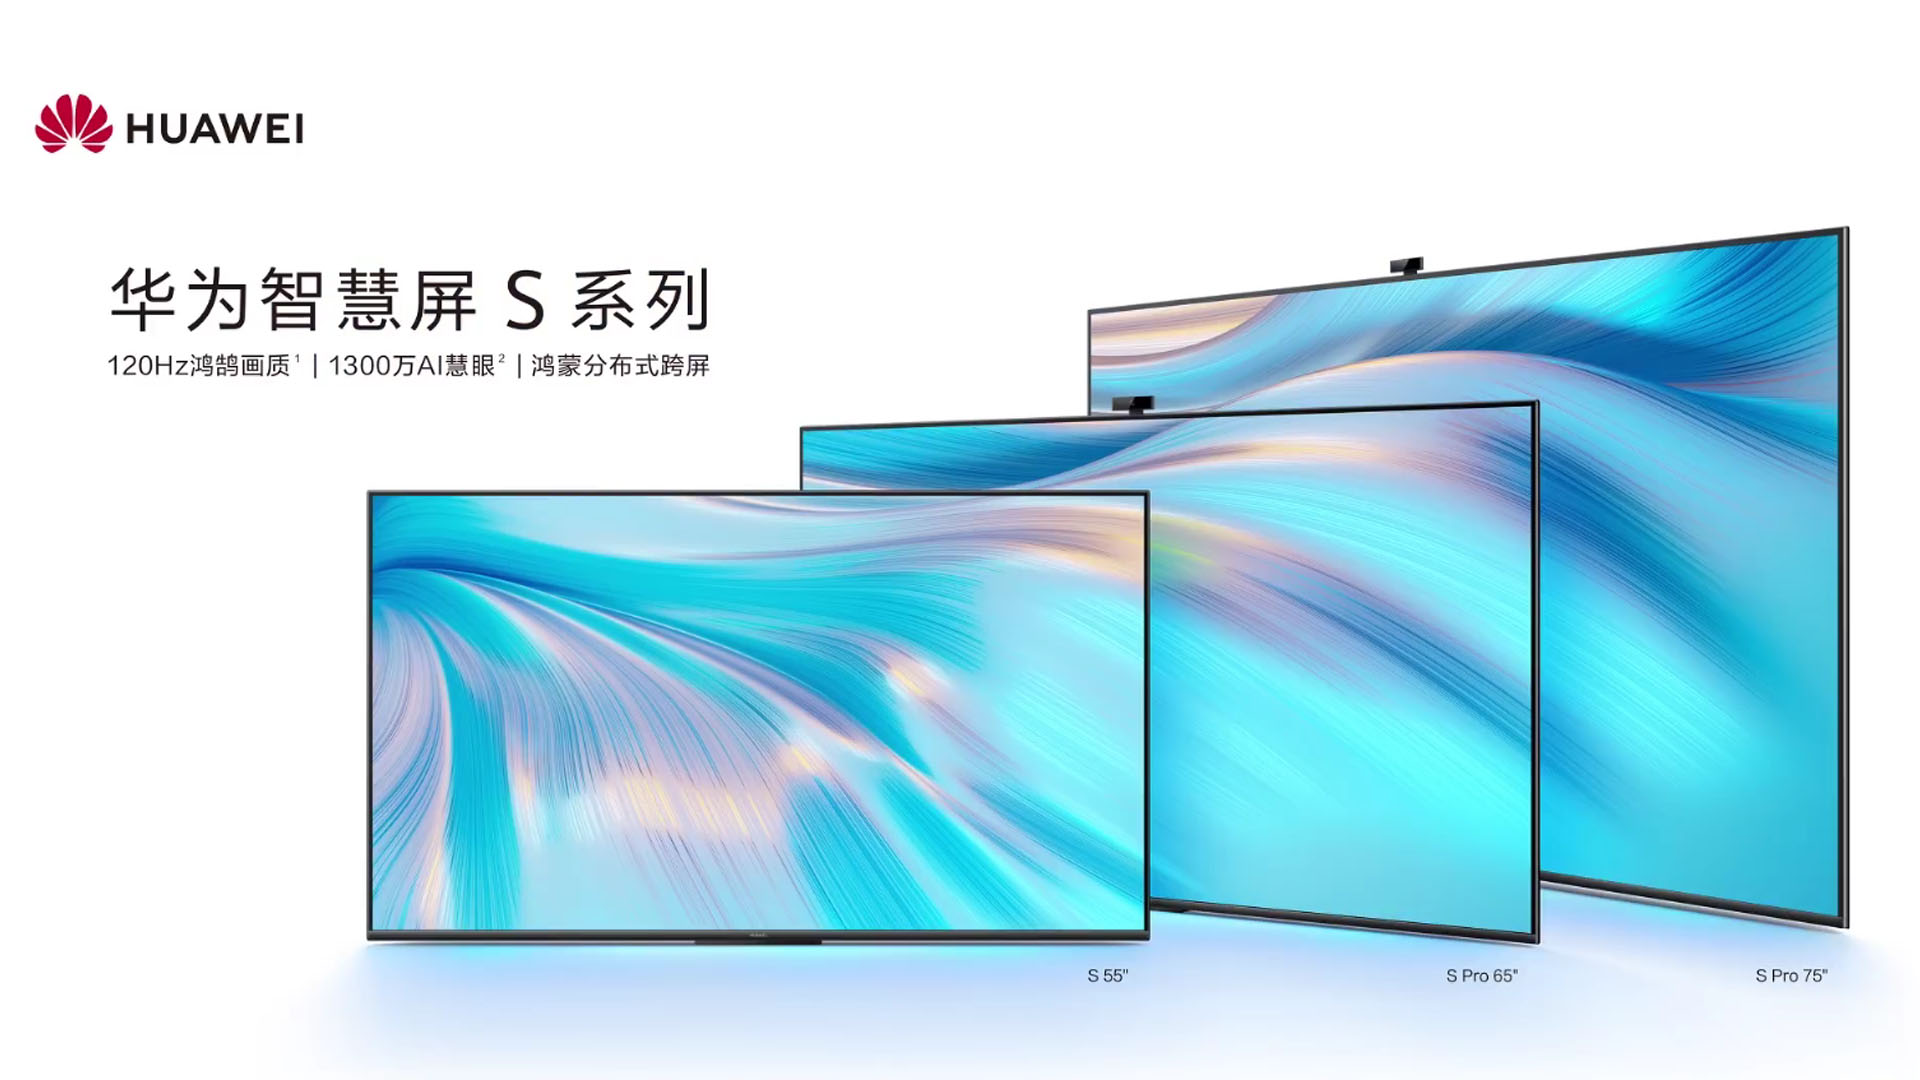 Huawei Smart Screen S Dan Smart Screen S Pro Turut Dilancarkan – 120Hz, Harmony OS Dan 4 Pembesar Suara